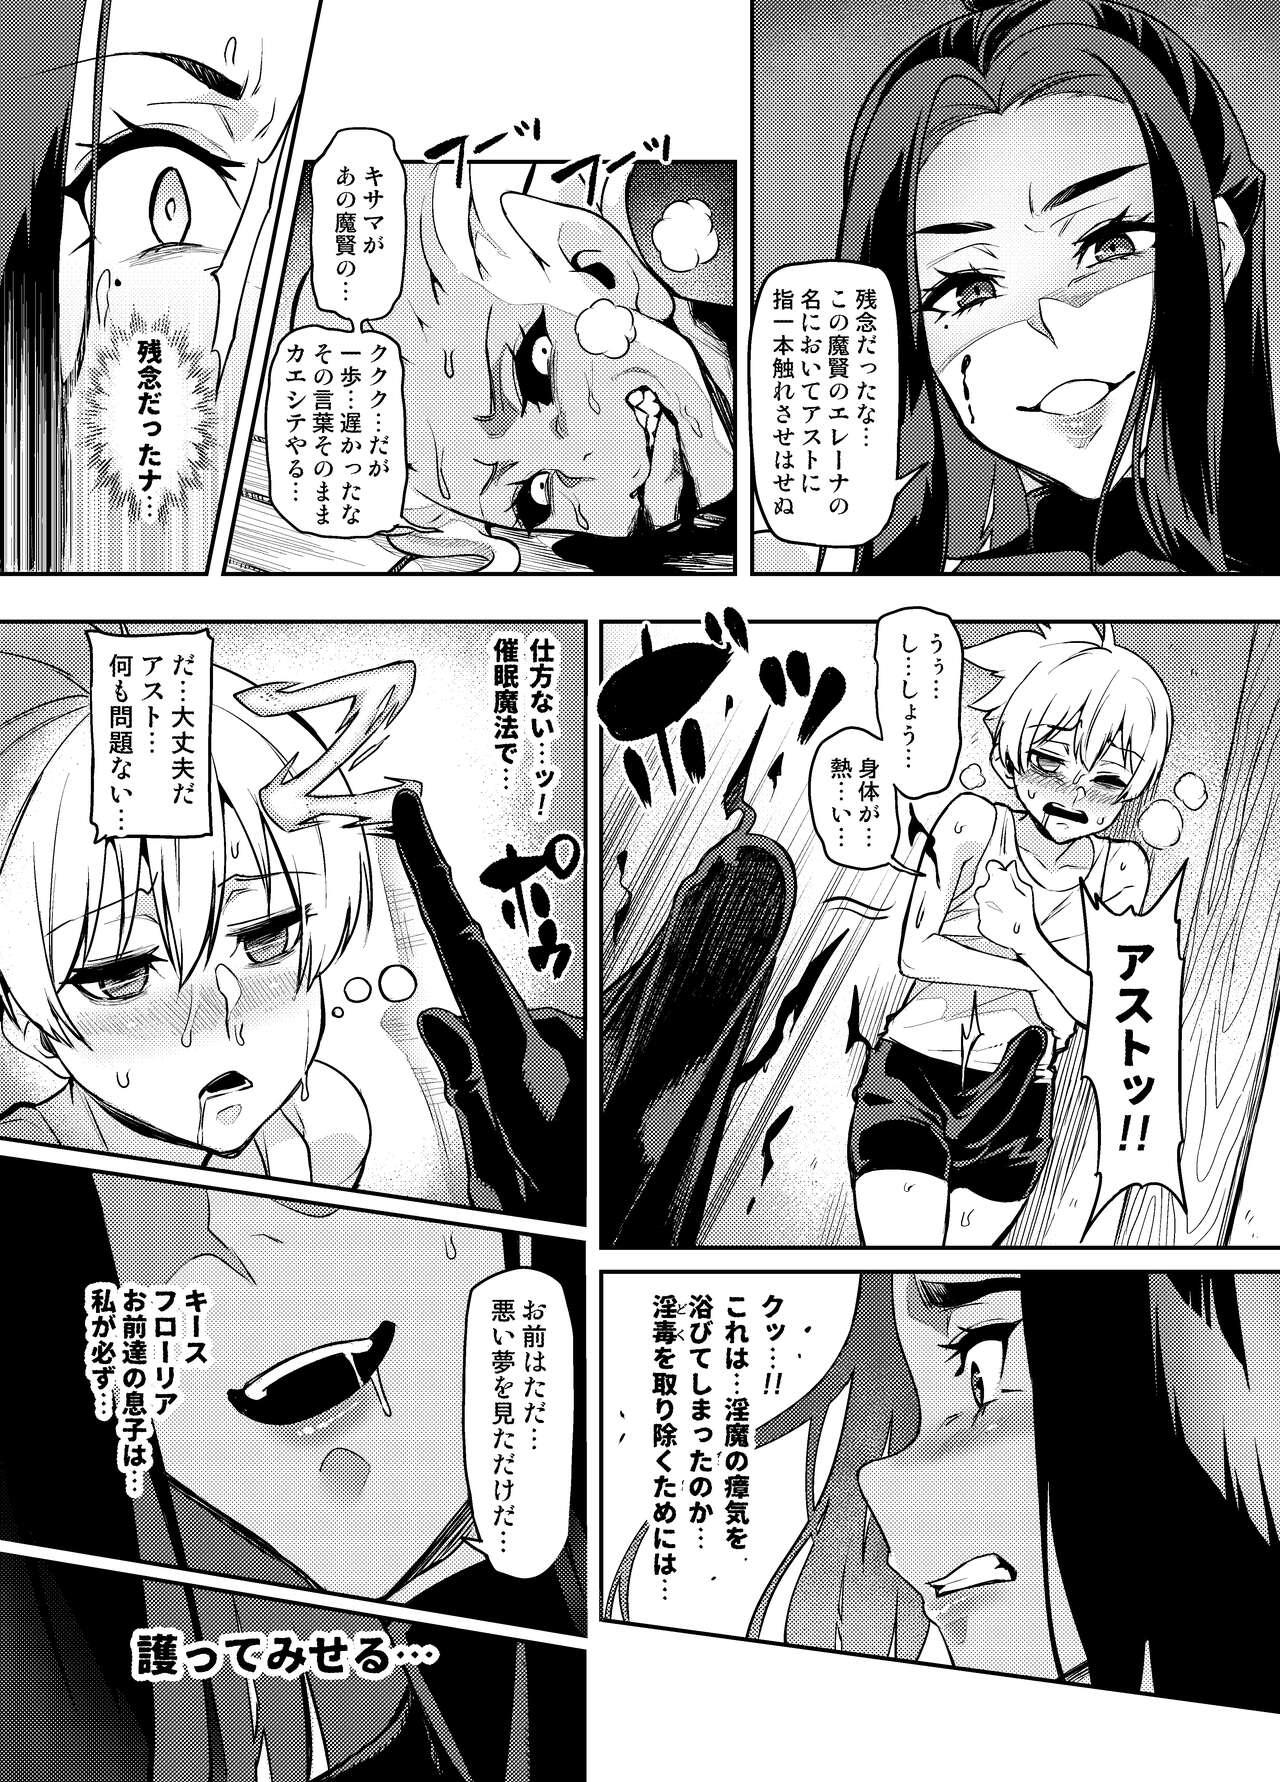 Chat [Hatoba Akane] Maken no Elena ~Katte no Omoibito ni Takusareta Ko to no Koi ni Ochiru Majo~ Ch. 1-13 [Ongoing] - Original Domination - Page 7